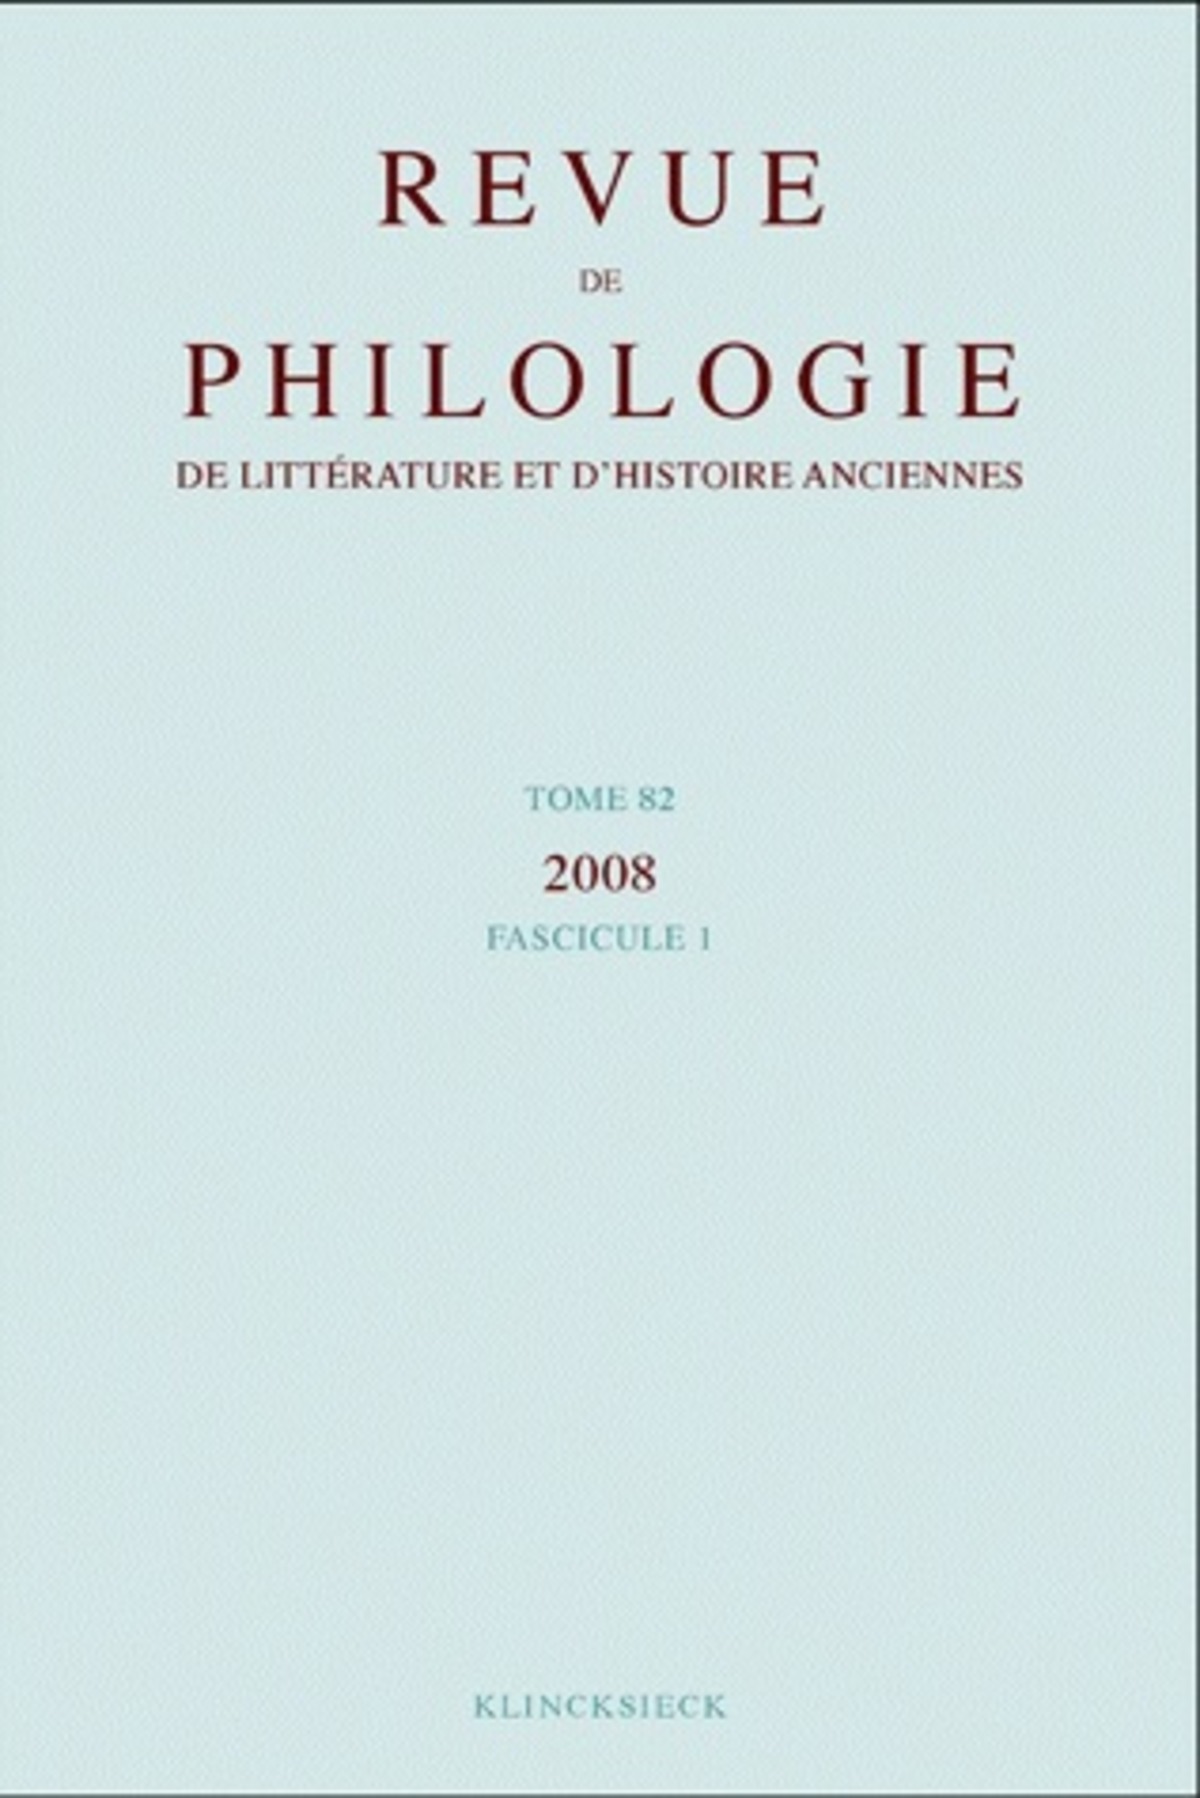 Revue de philologie, de littérature et d'histoire anciennes volume 82